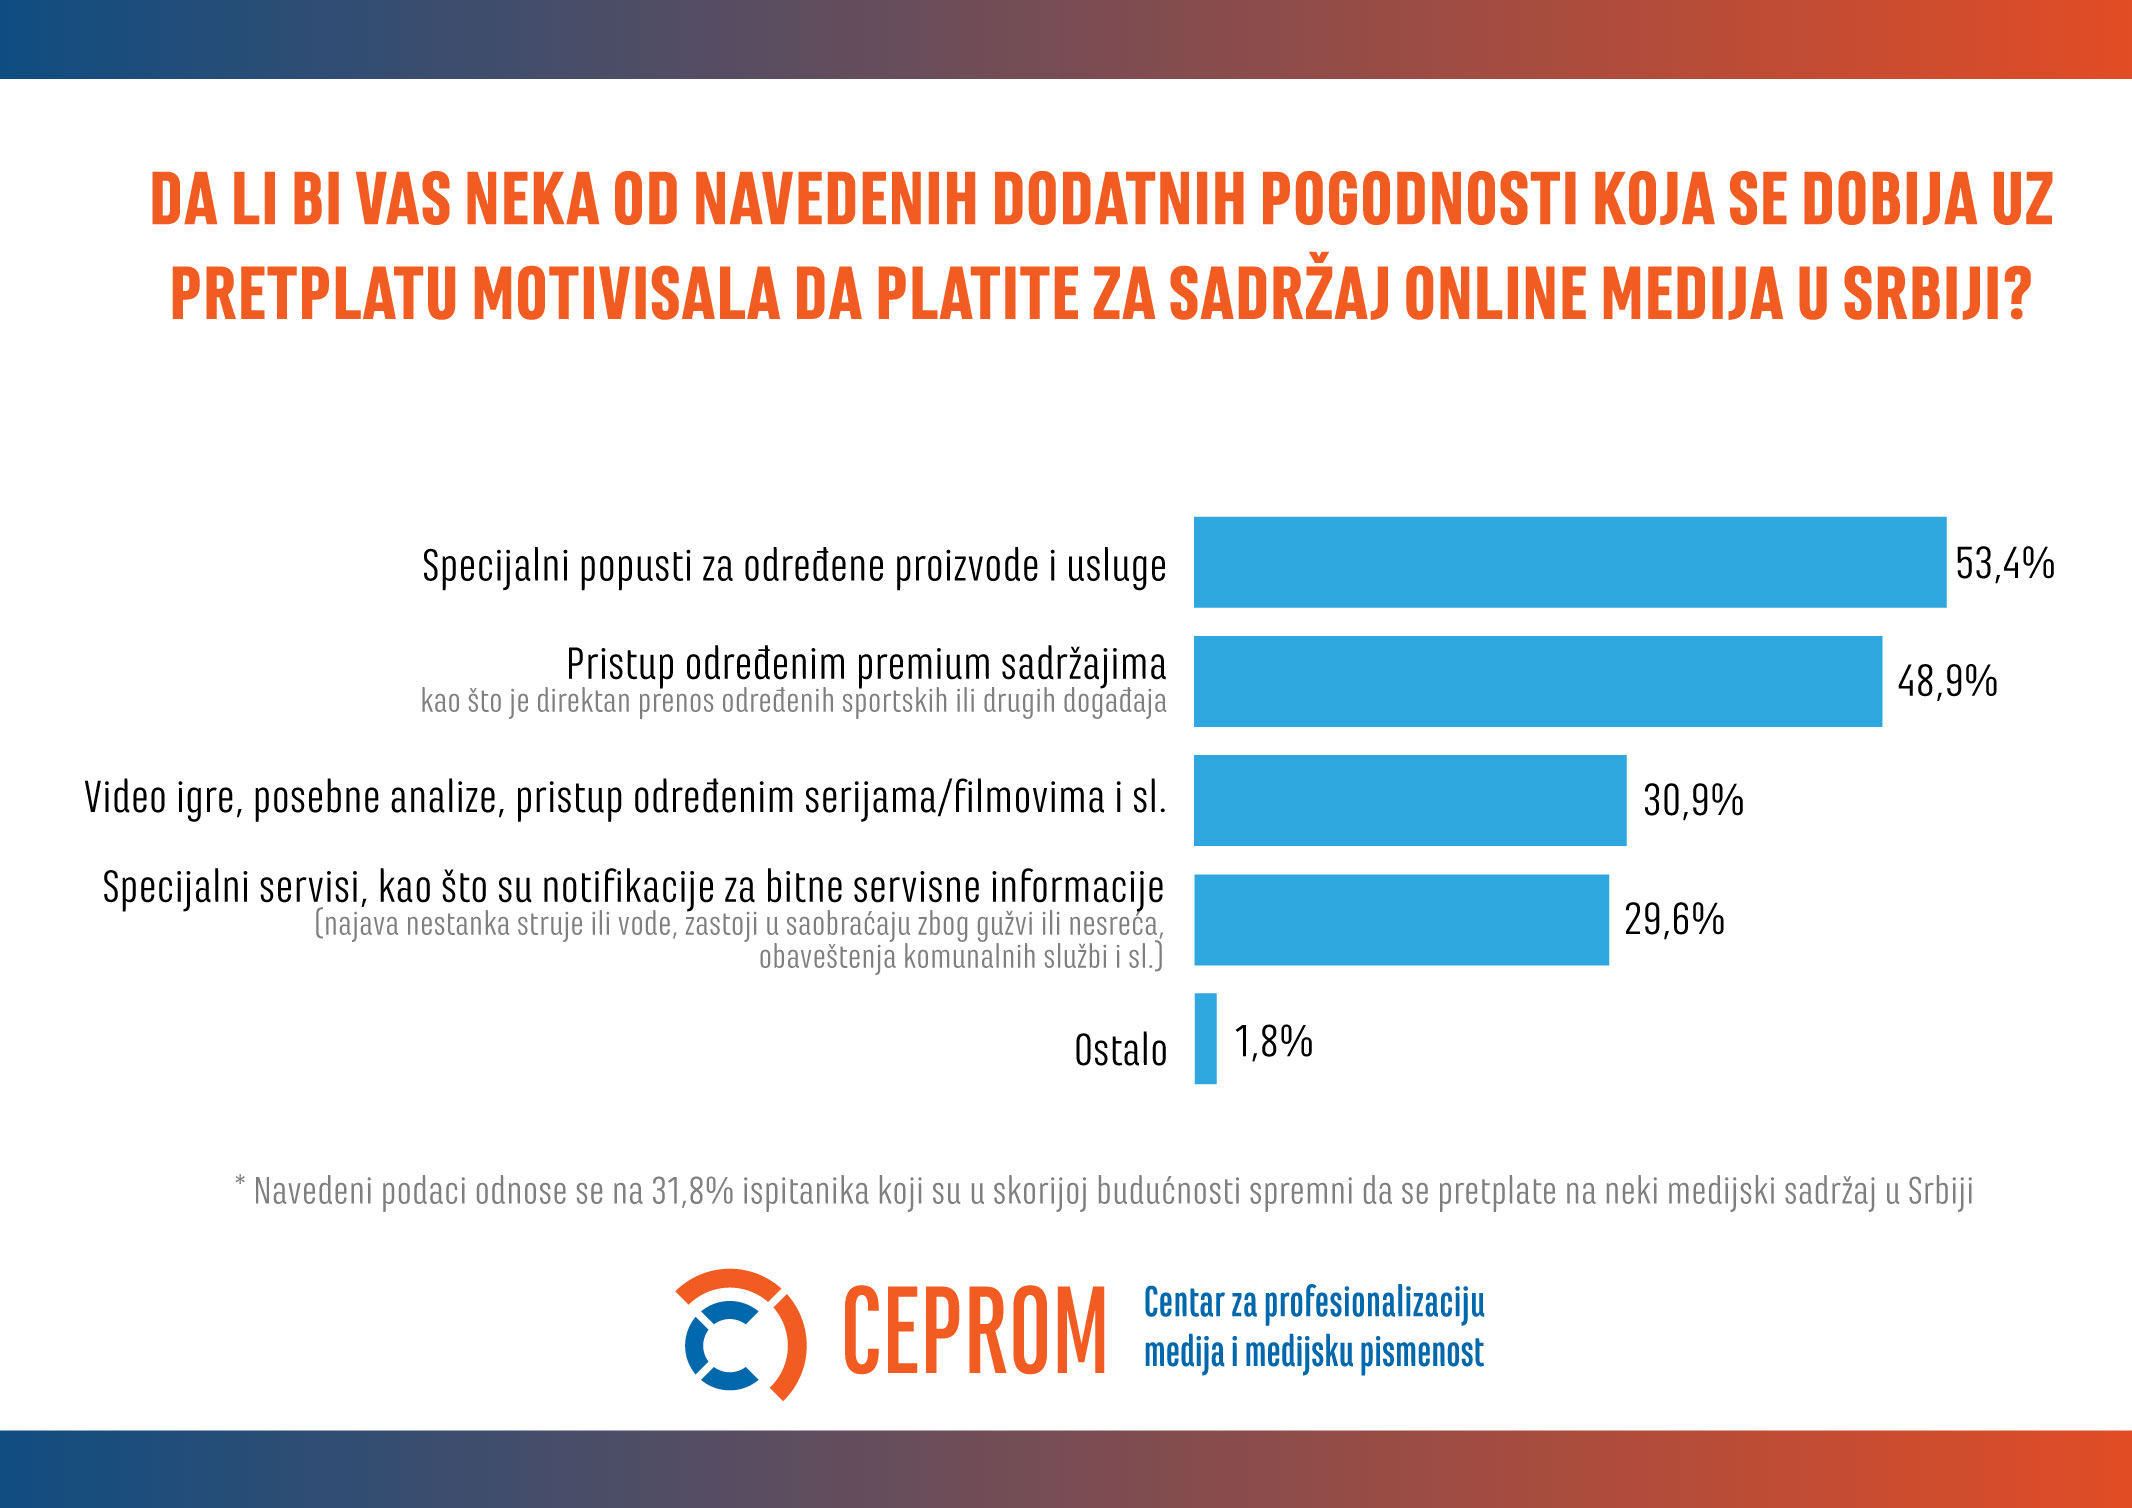 Kvalitetno novinarstvo i ekskluzivan sadržaj ključni za pretplate na onlajn medije u Srbiji 8